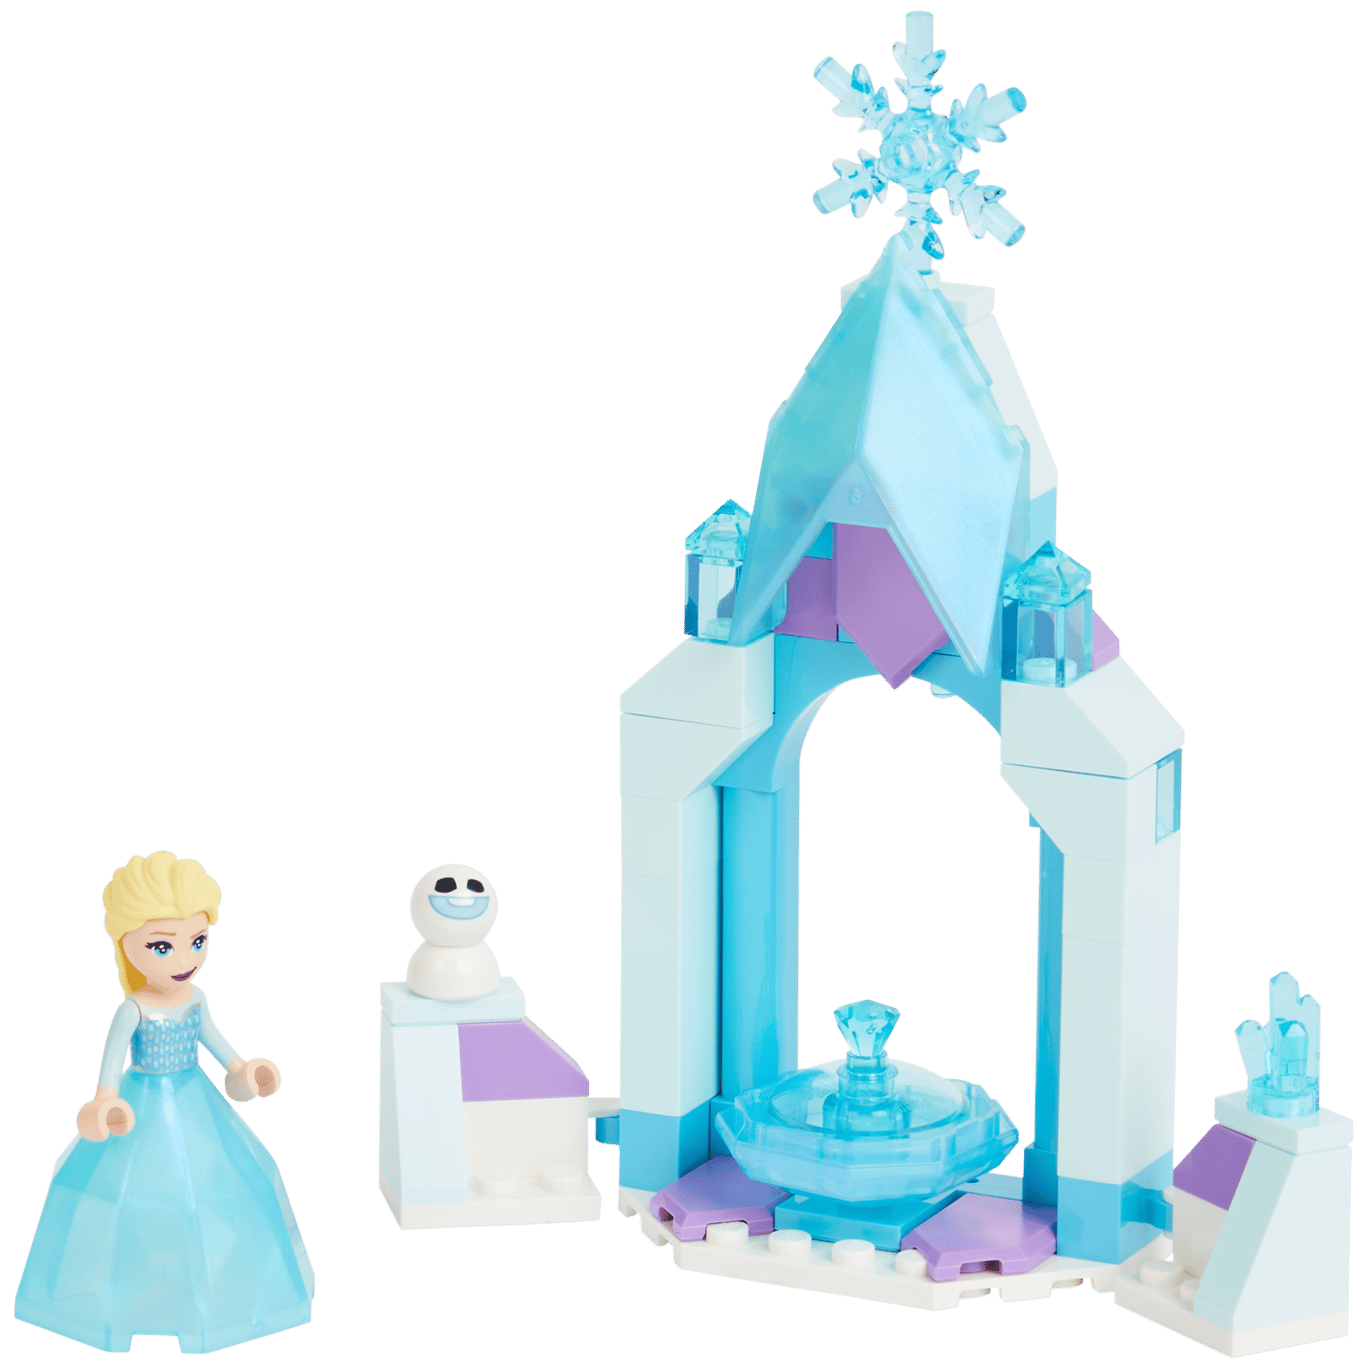 LEGO Disney Frozen Patio del castillo de Elsa